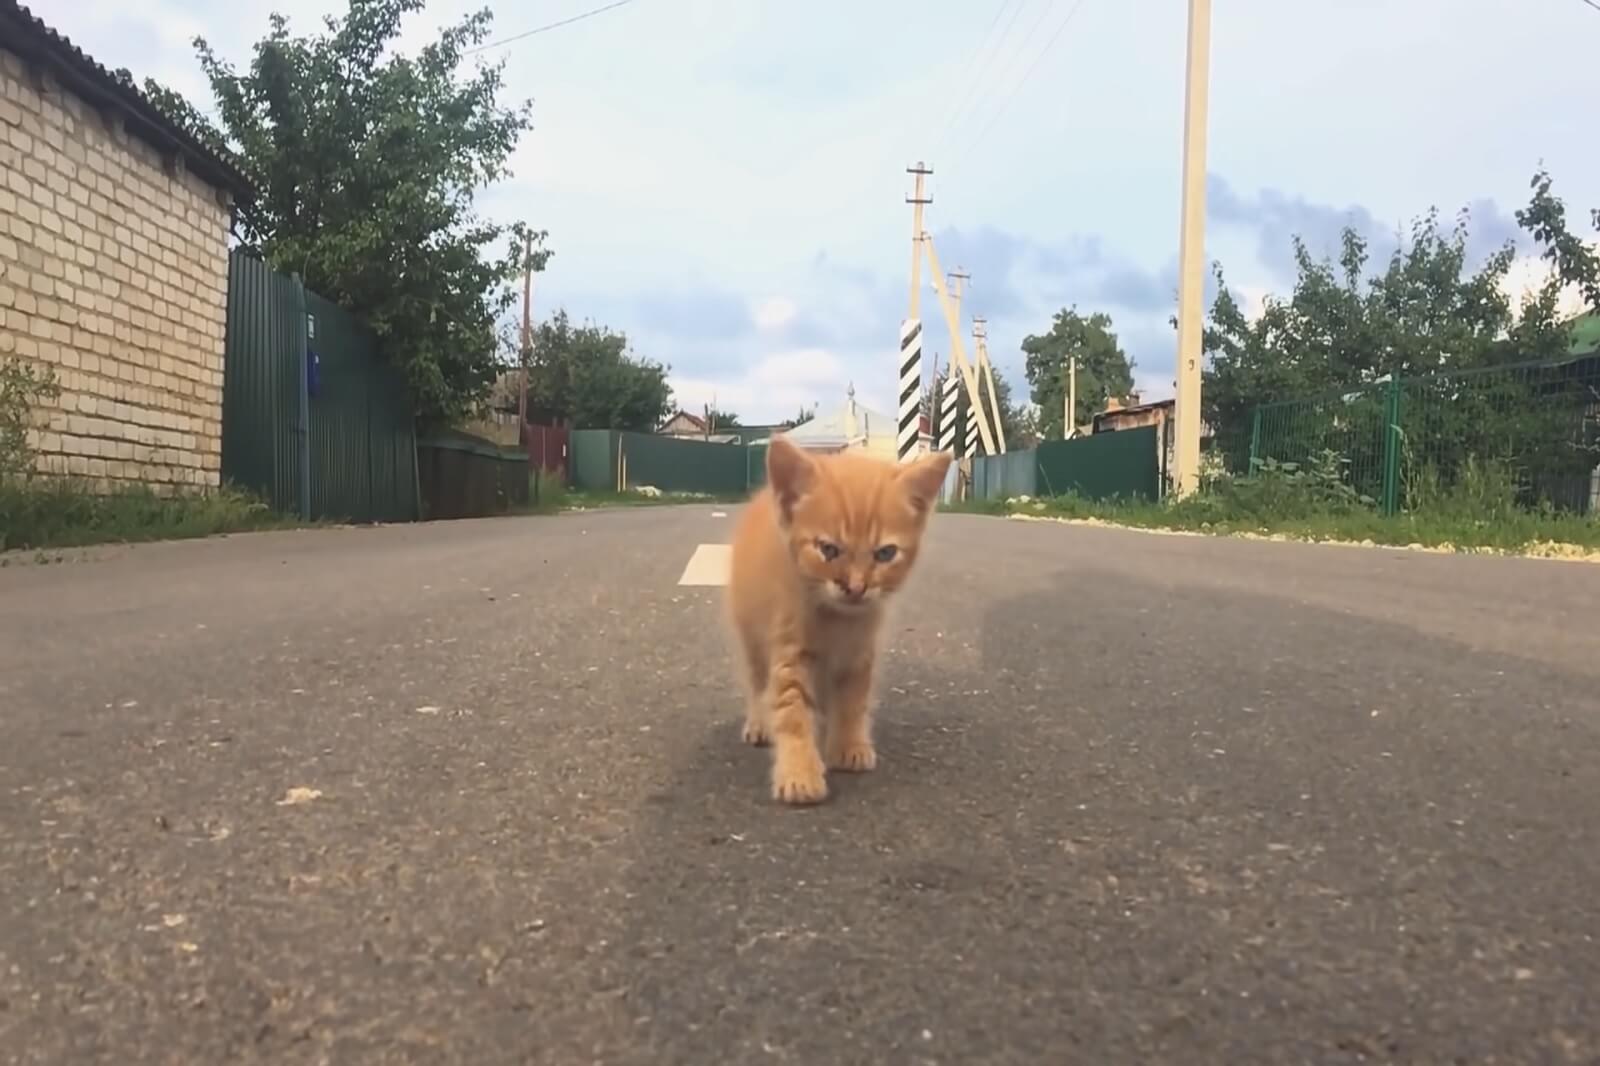 Kitten is walking on street.